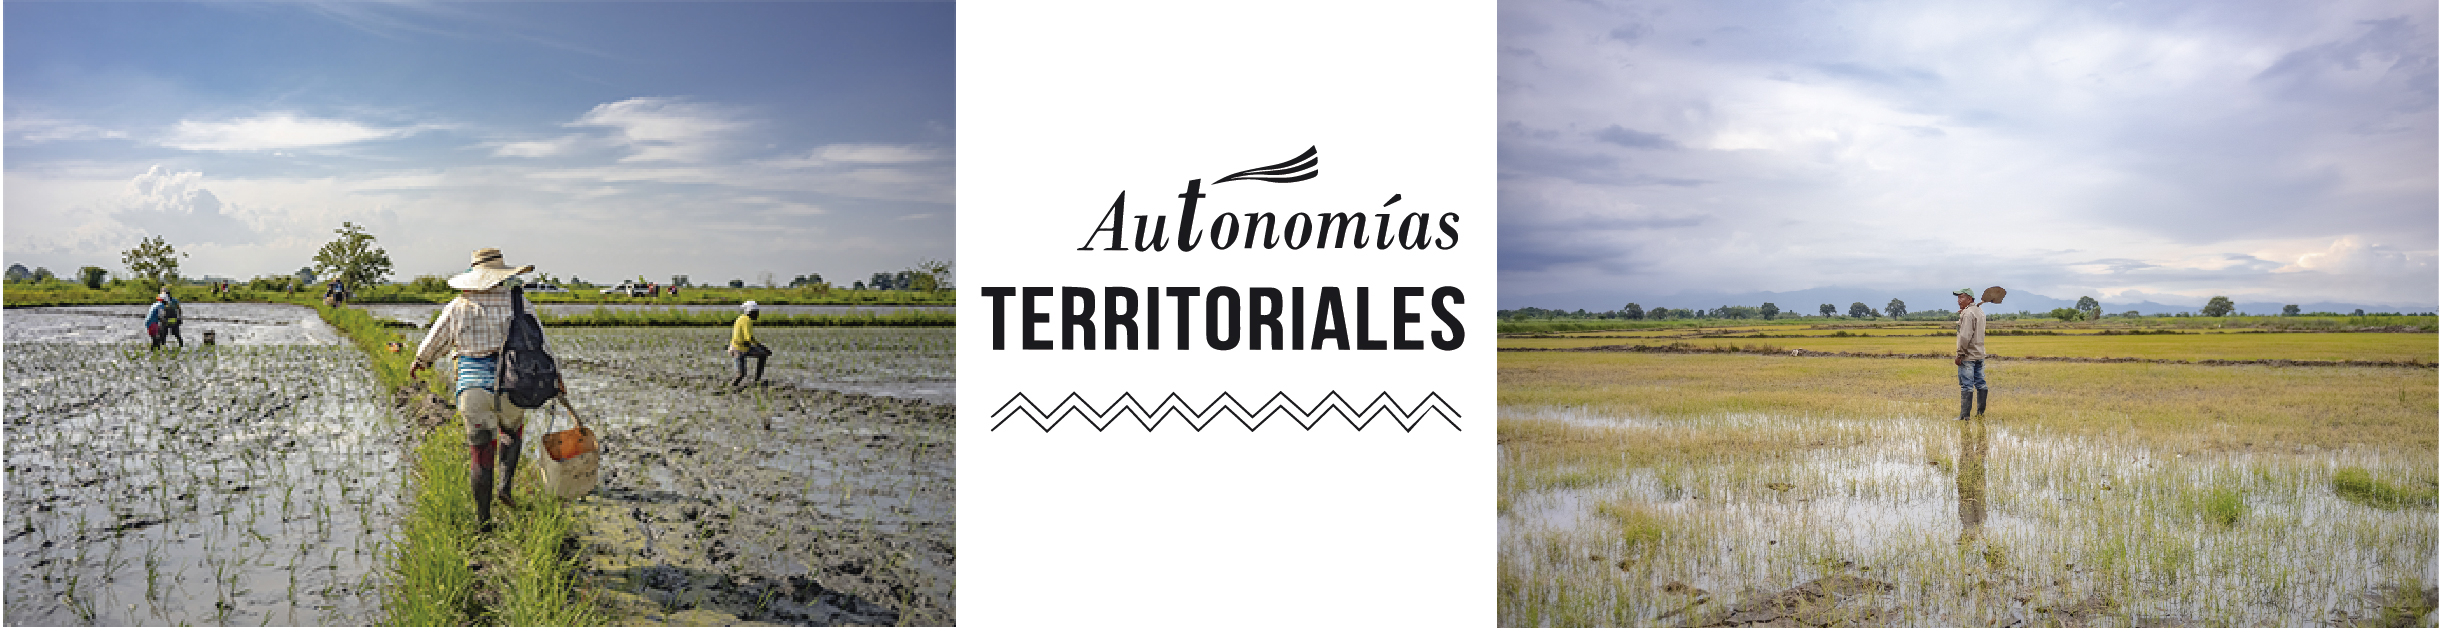 Autonomias territoriales CRIC 3ra temporada (1)